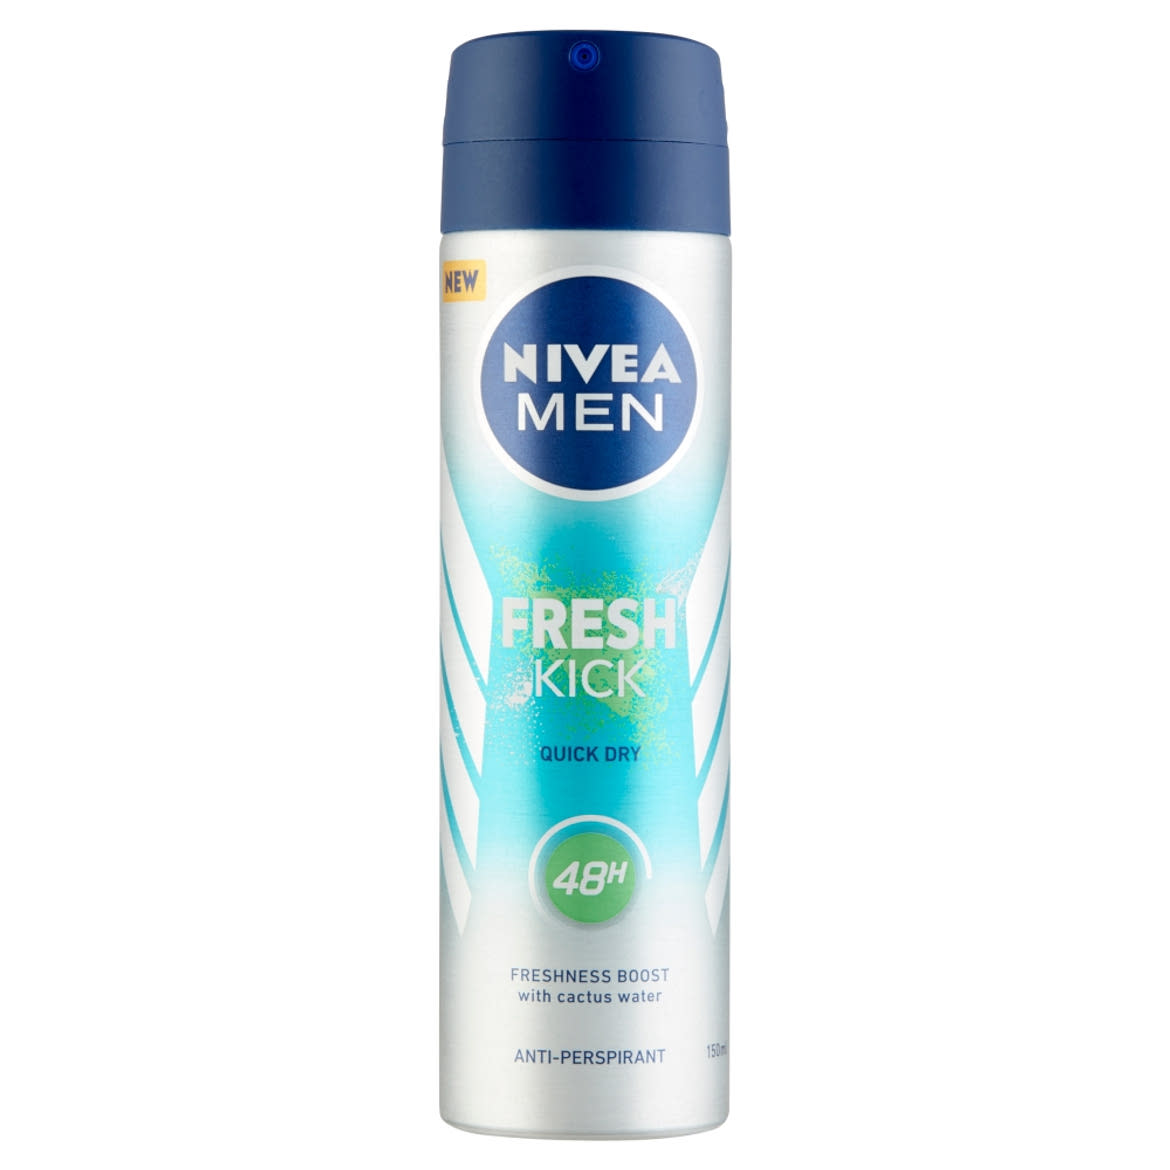 NIVEA MEN Fresh Kick deo spray